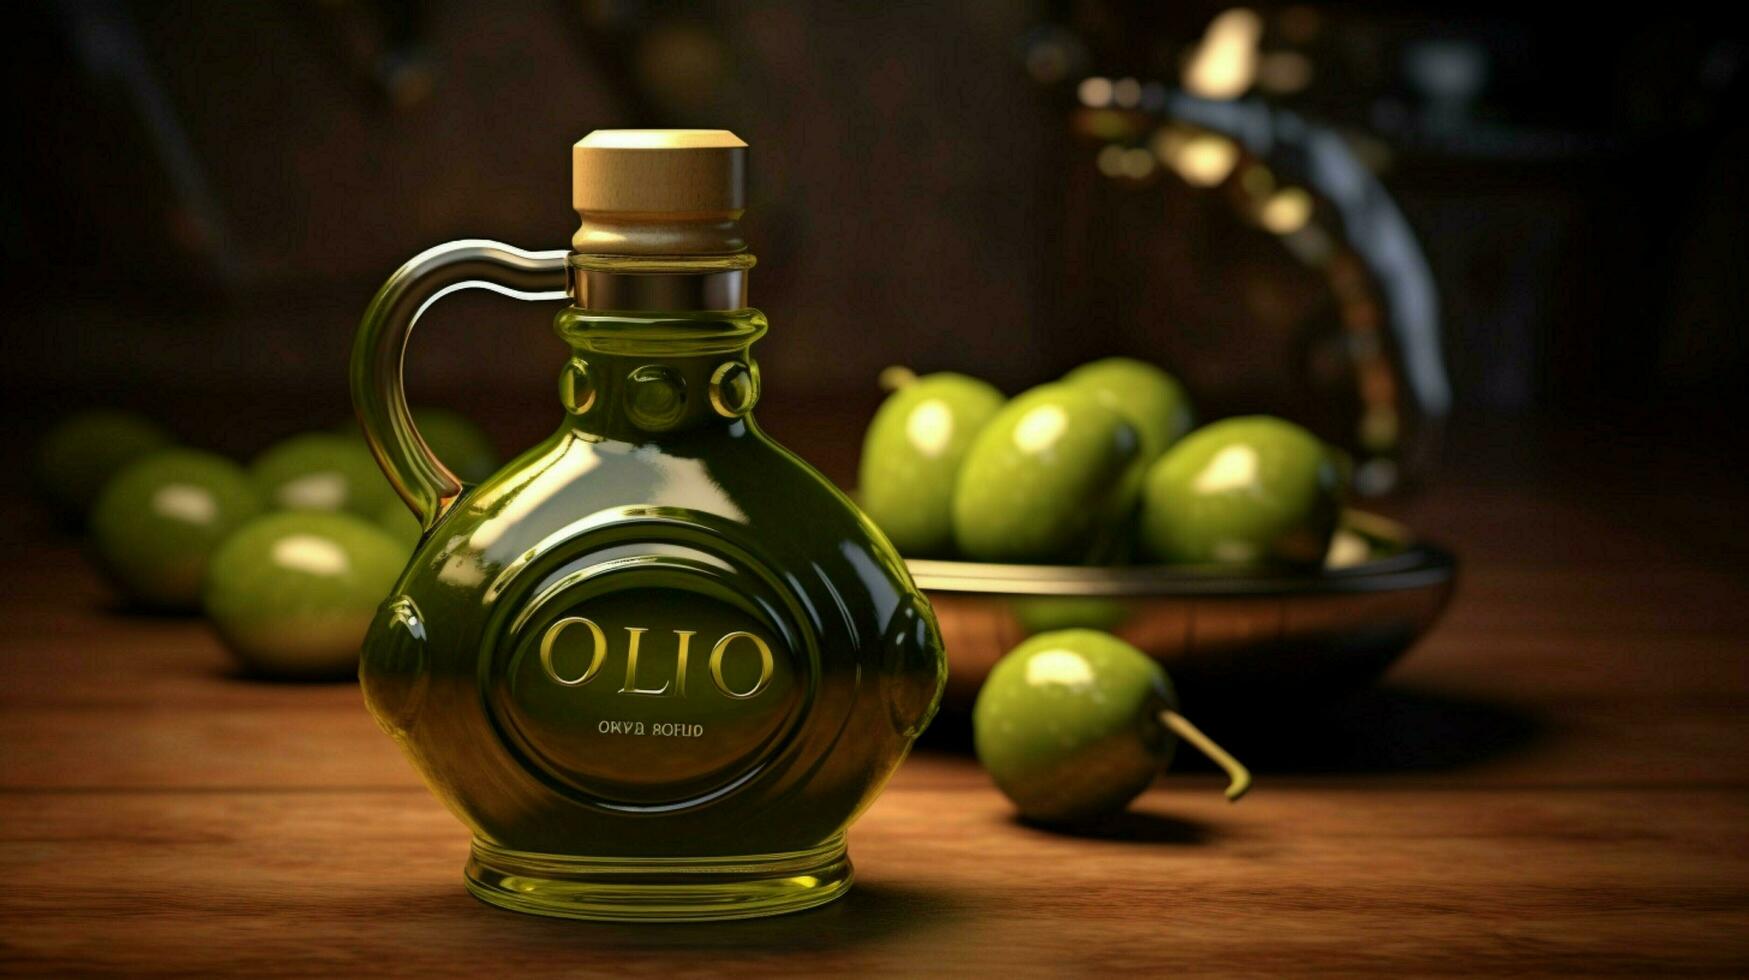 uma garrafa do Oliva óleo com uma lidar com e uma lidar com foto